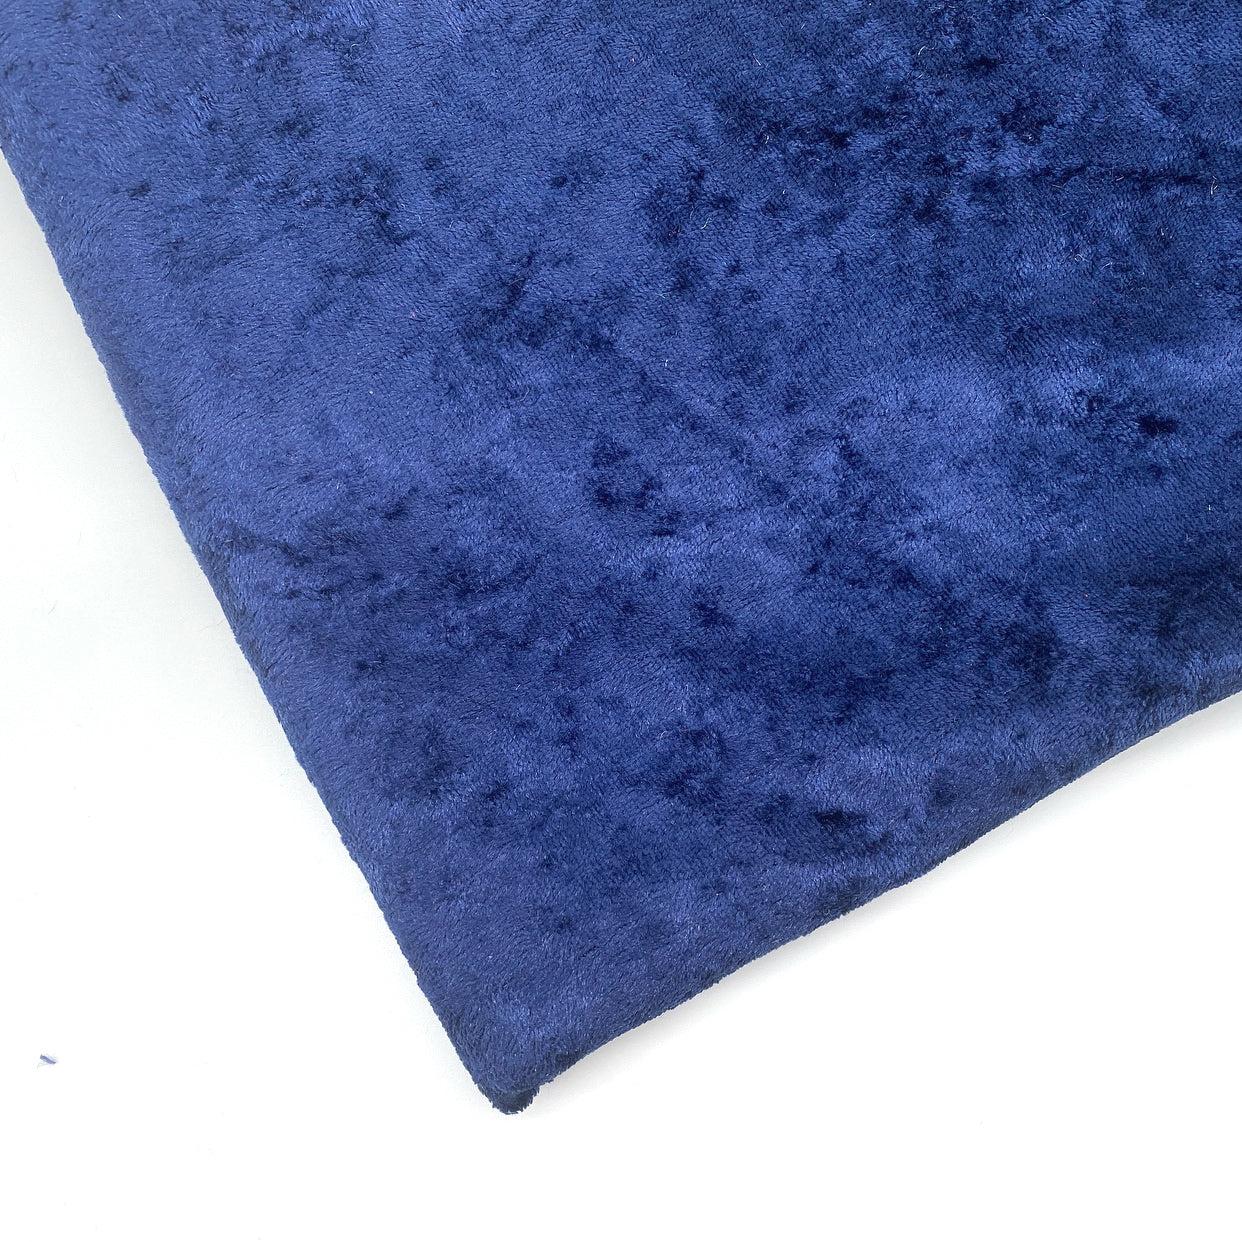 Navy Blue Crushed Velvet Fabric